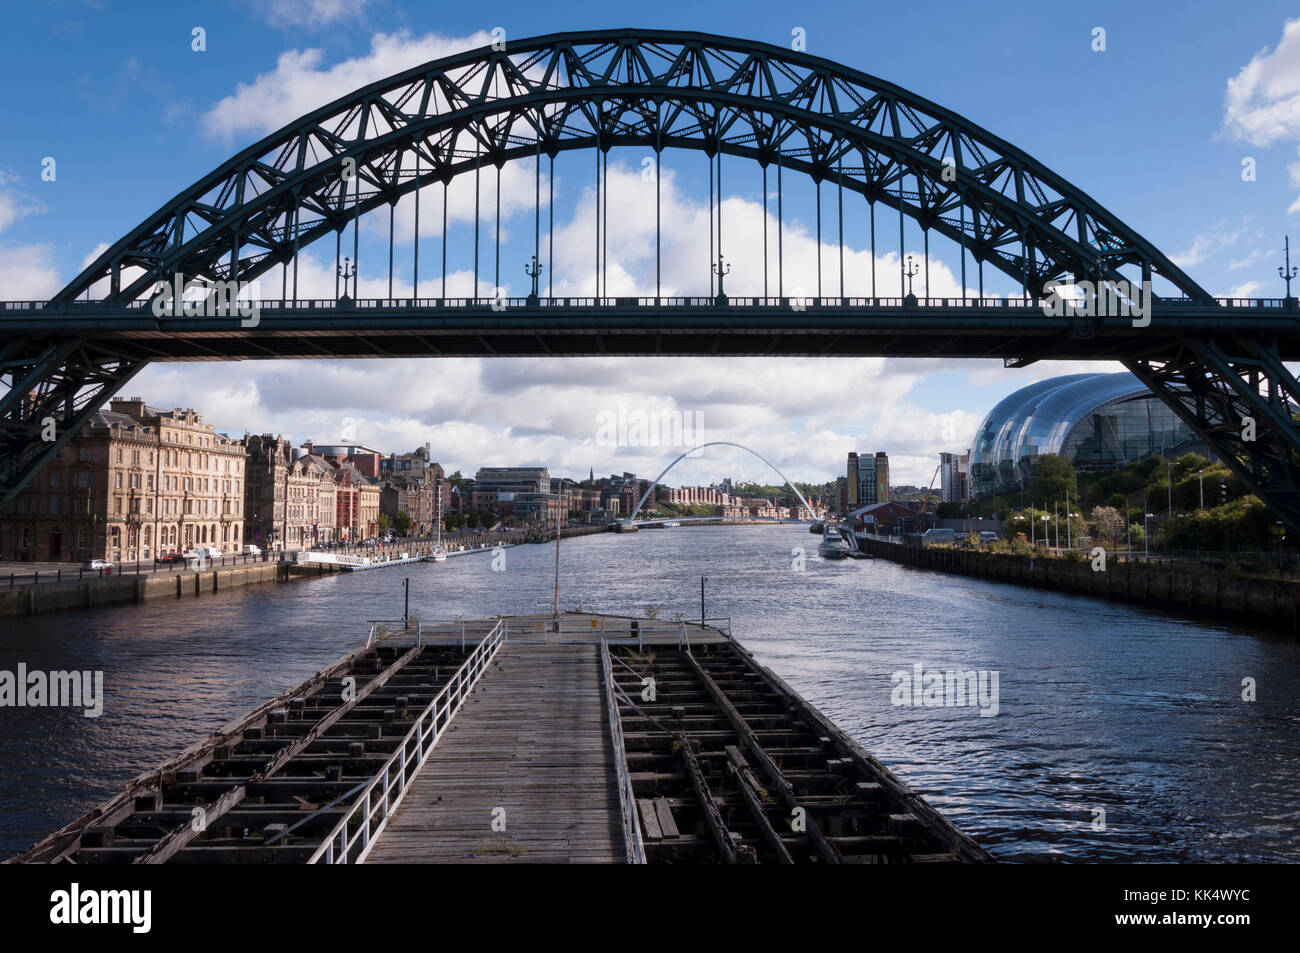 Blick von der Hängebrücke, die Tyne Bridge über den Fluss Tyne im Nordosten Englands, die Verknüpfung von Newcastle upon Tyne und Gateshead. Stockfoto